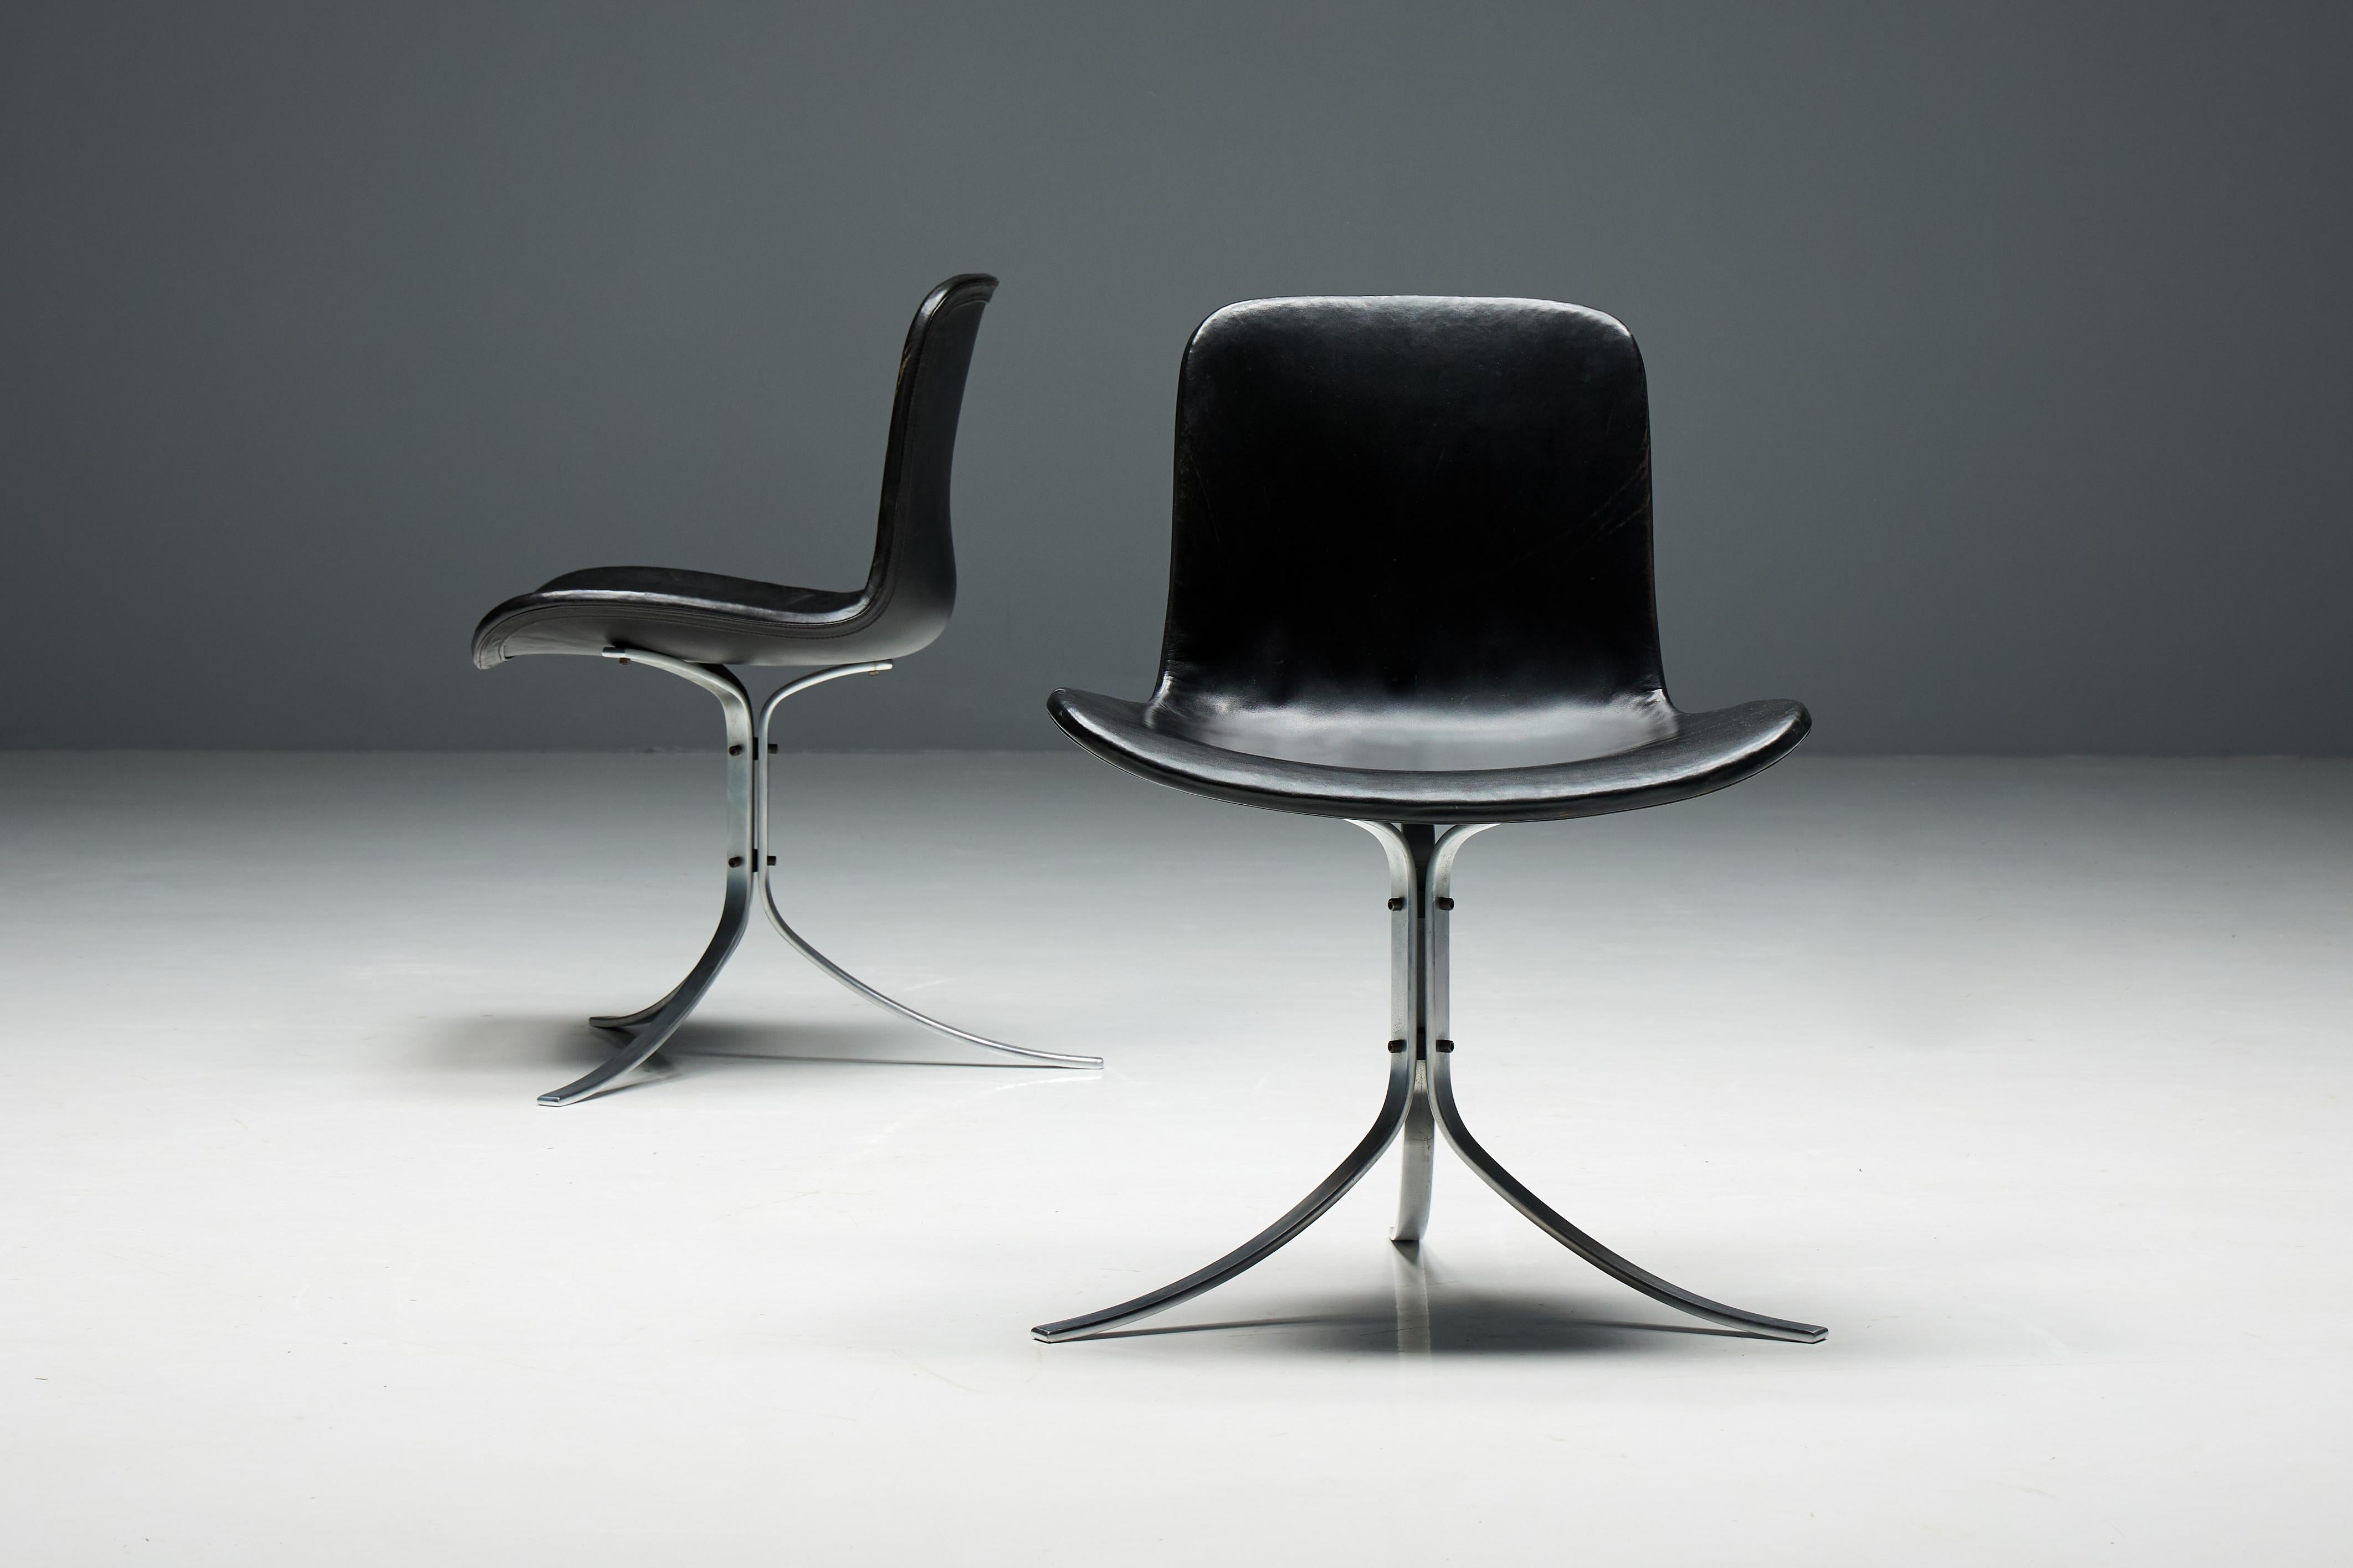 La chaise PK9, également connue sous le nom de chaise Tulipe, conçue par Poul Kjærholm et produite par E. Kold Christensen. Sa silhouette distinctive, caractérisée par trois ressorts en acier inoxydable satiné impeccablement travaillés qui font